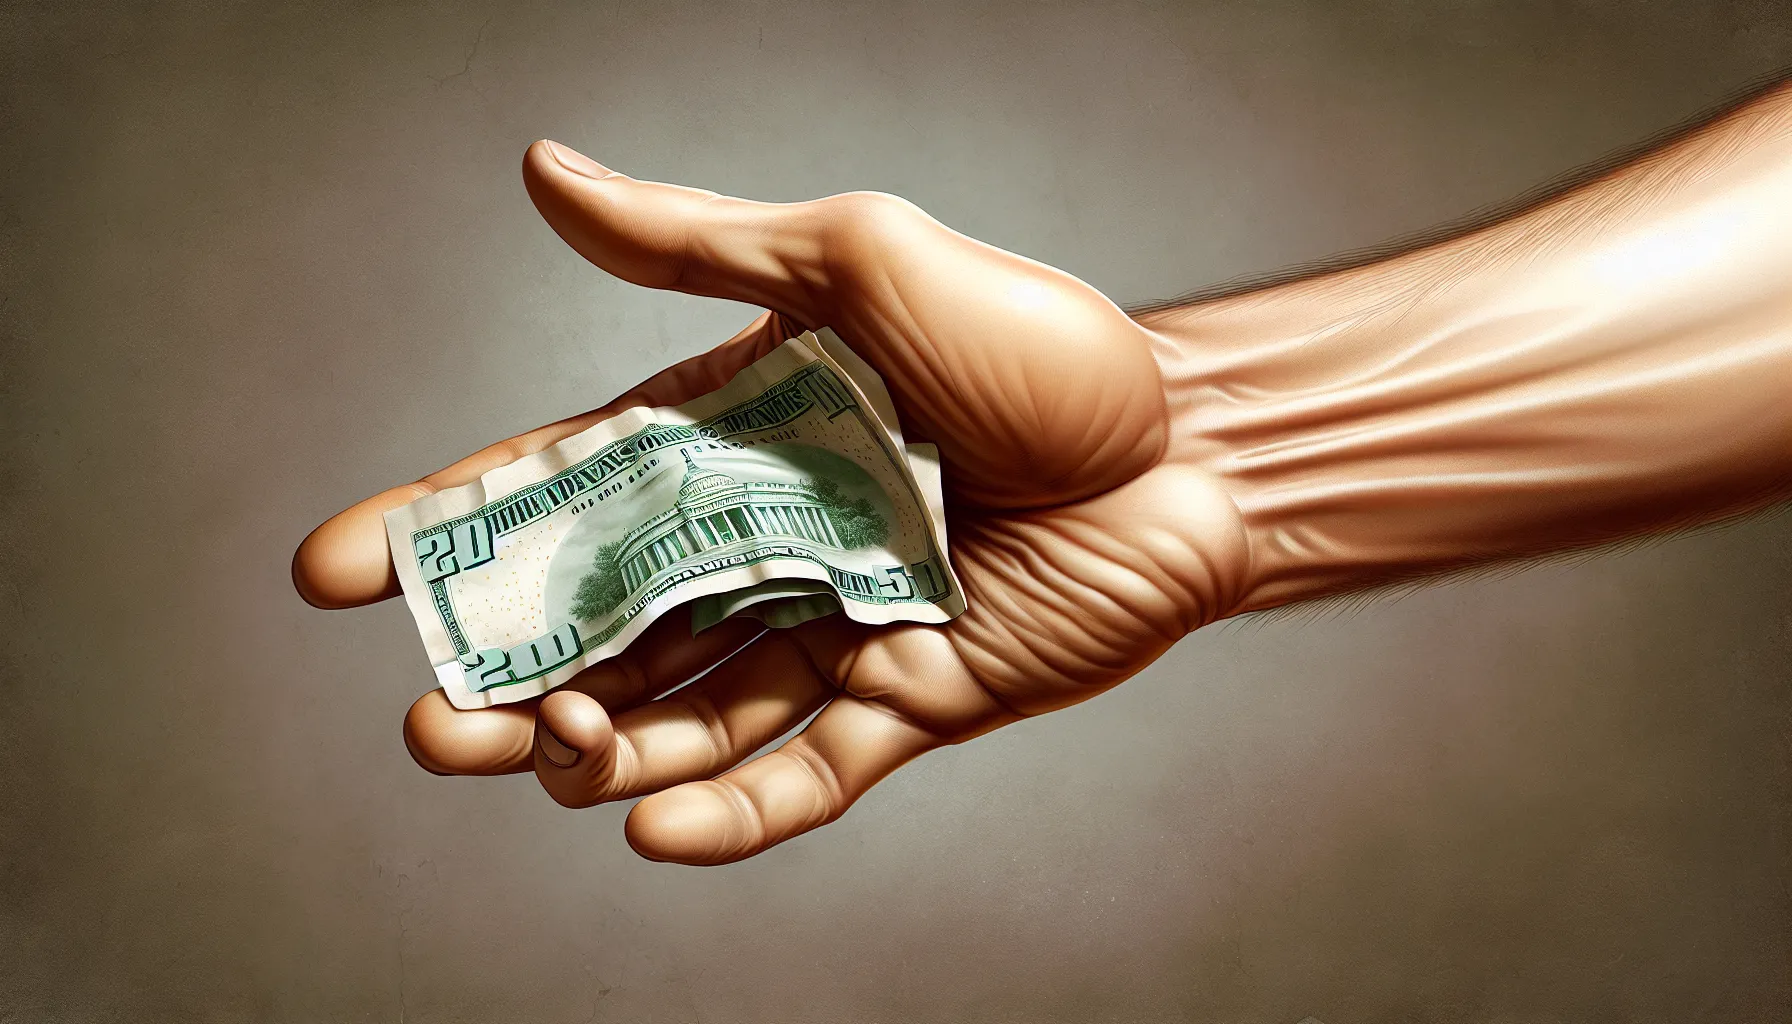 “Imagen de una mano rechazando un billete de dinero